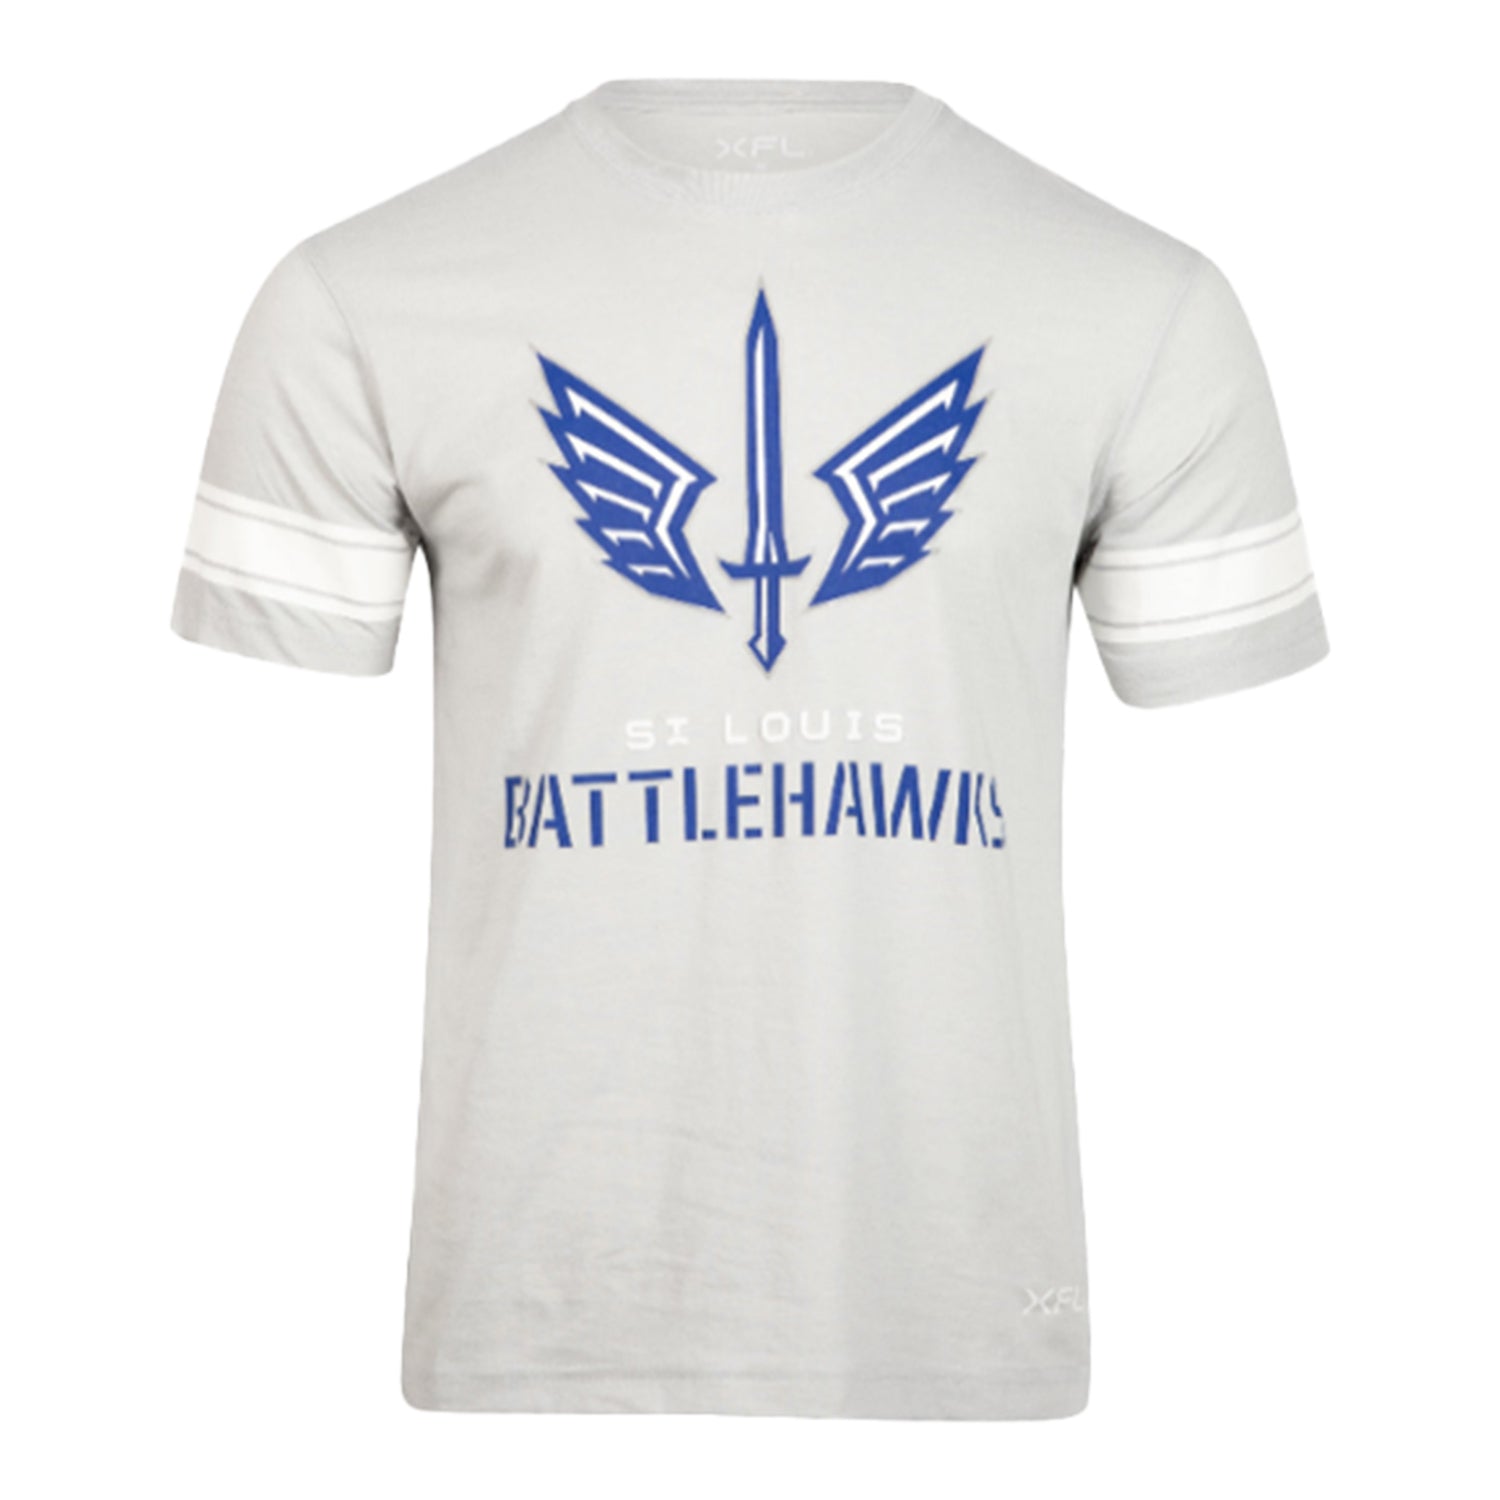 Battlehawks Stripe Sleeve Short Sleeve T-Shirt In Grey - Front View